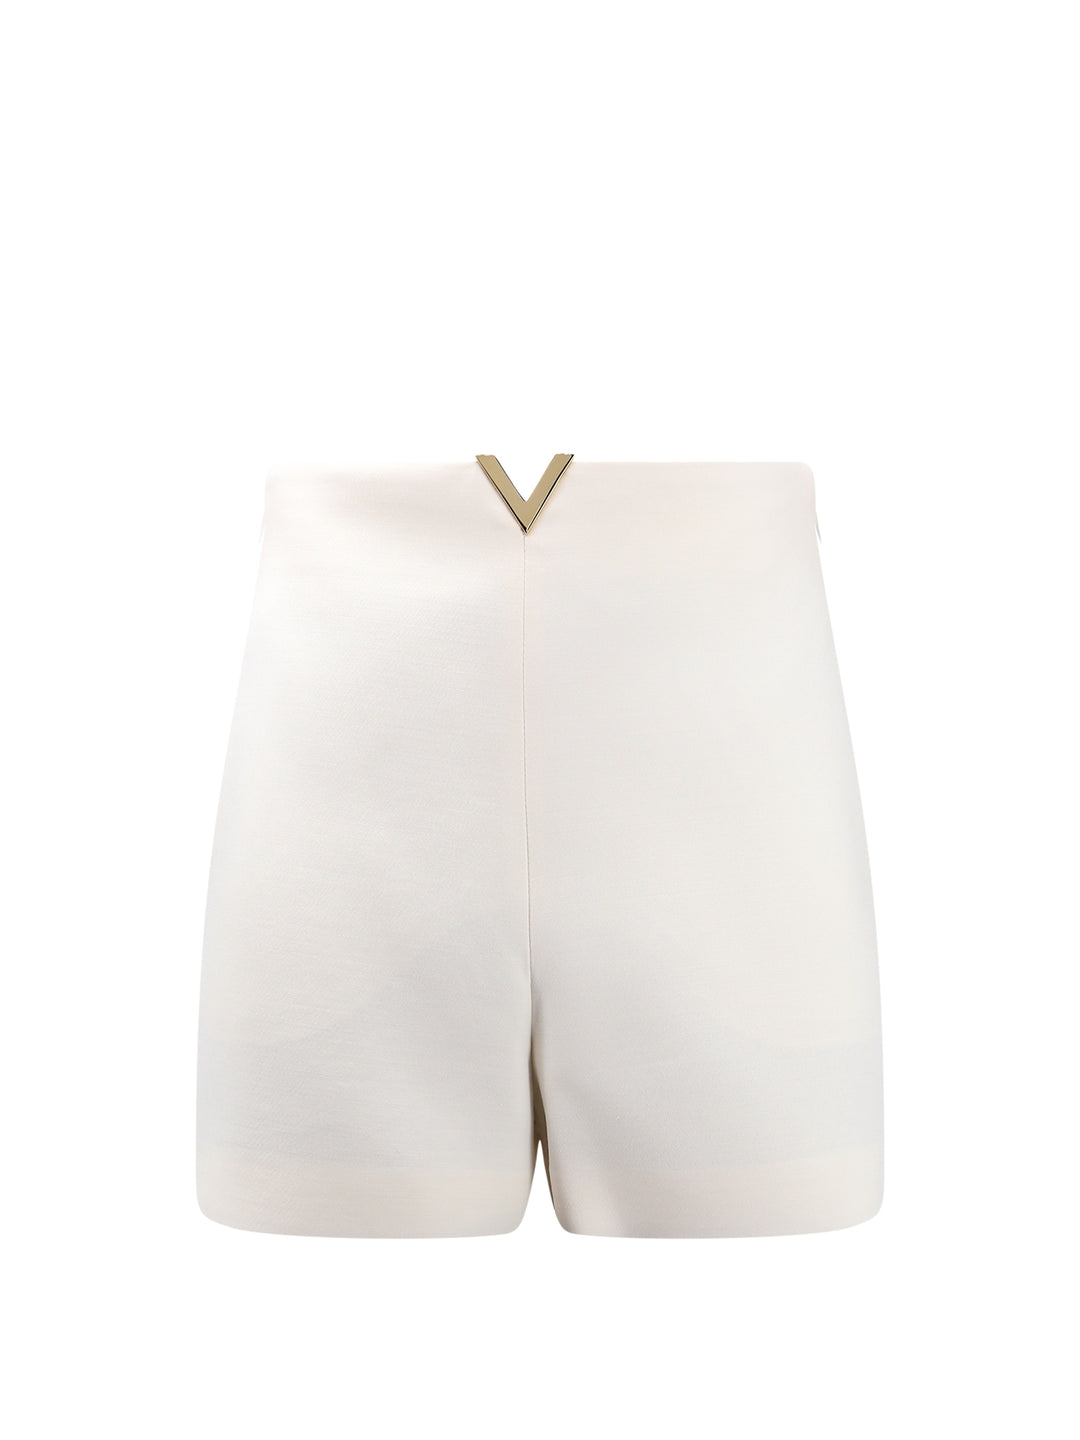 Shorts in lana vergine e seta con dettaglio V Gold